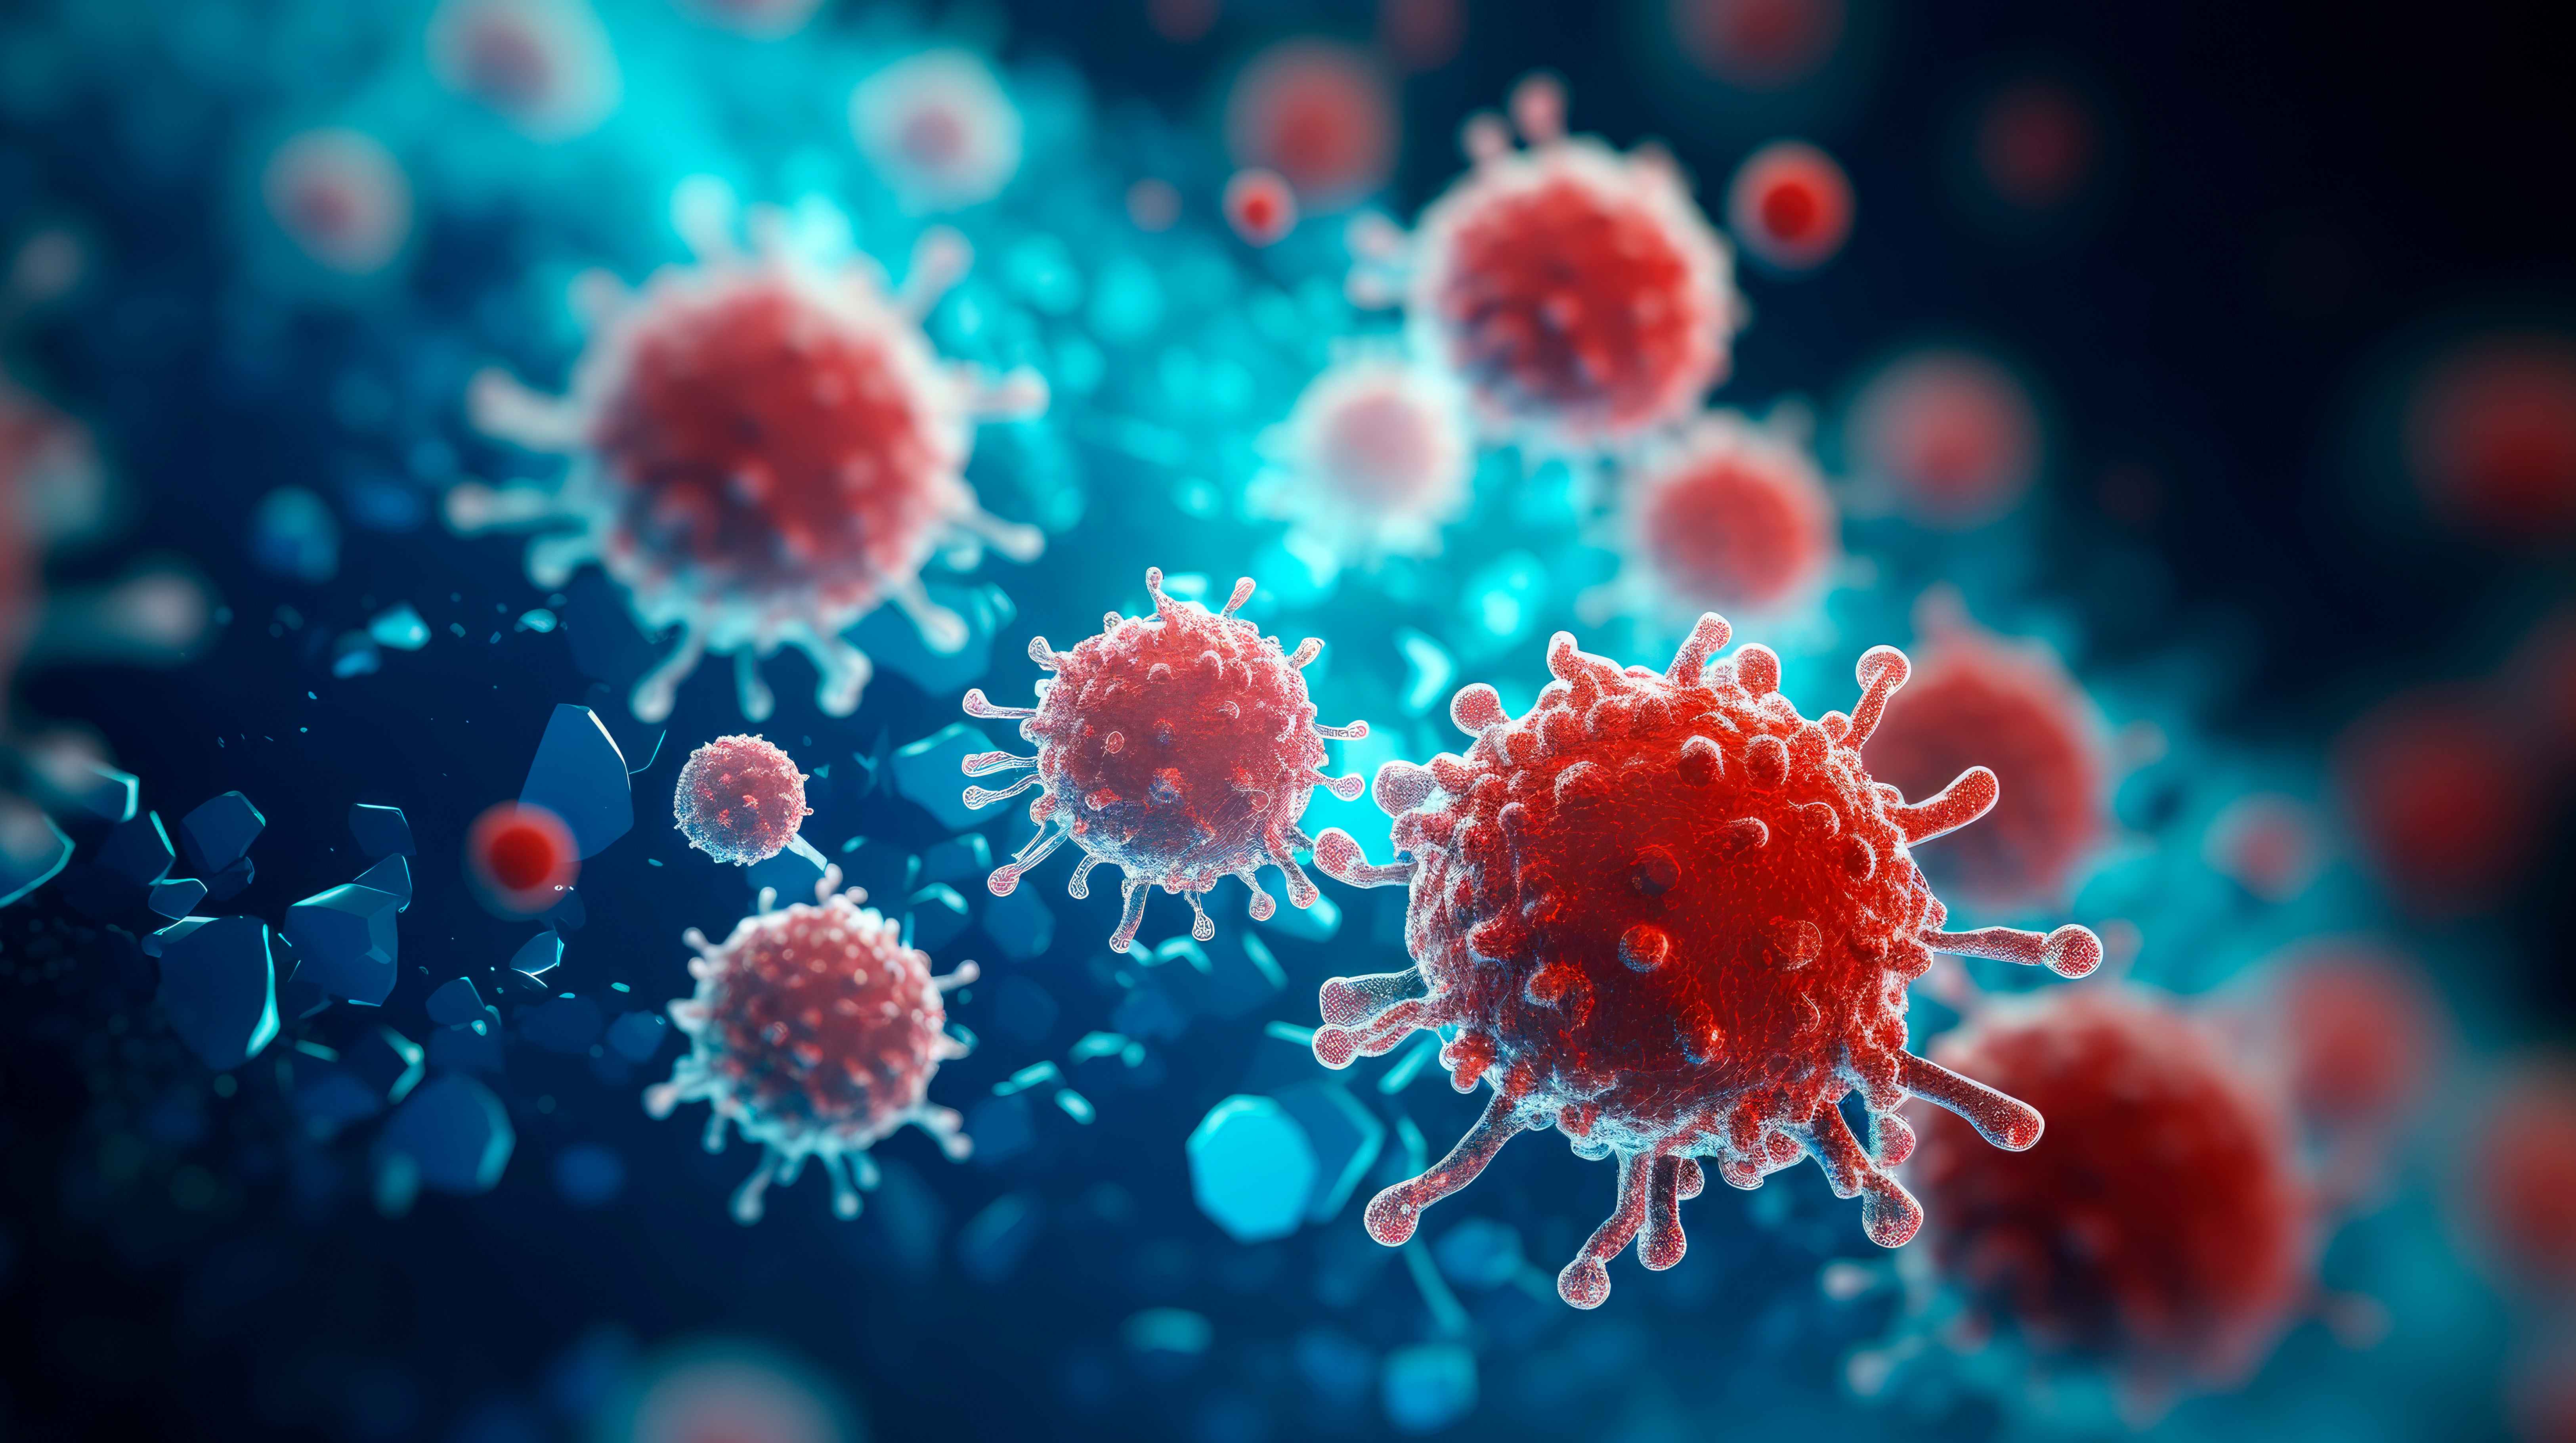 Les virus et les bactéries peuvent déclencher le même type de symptômes, mais leur prise en charge est totalement différente. © graja, Adobe Stock